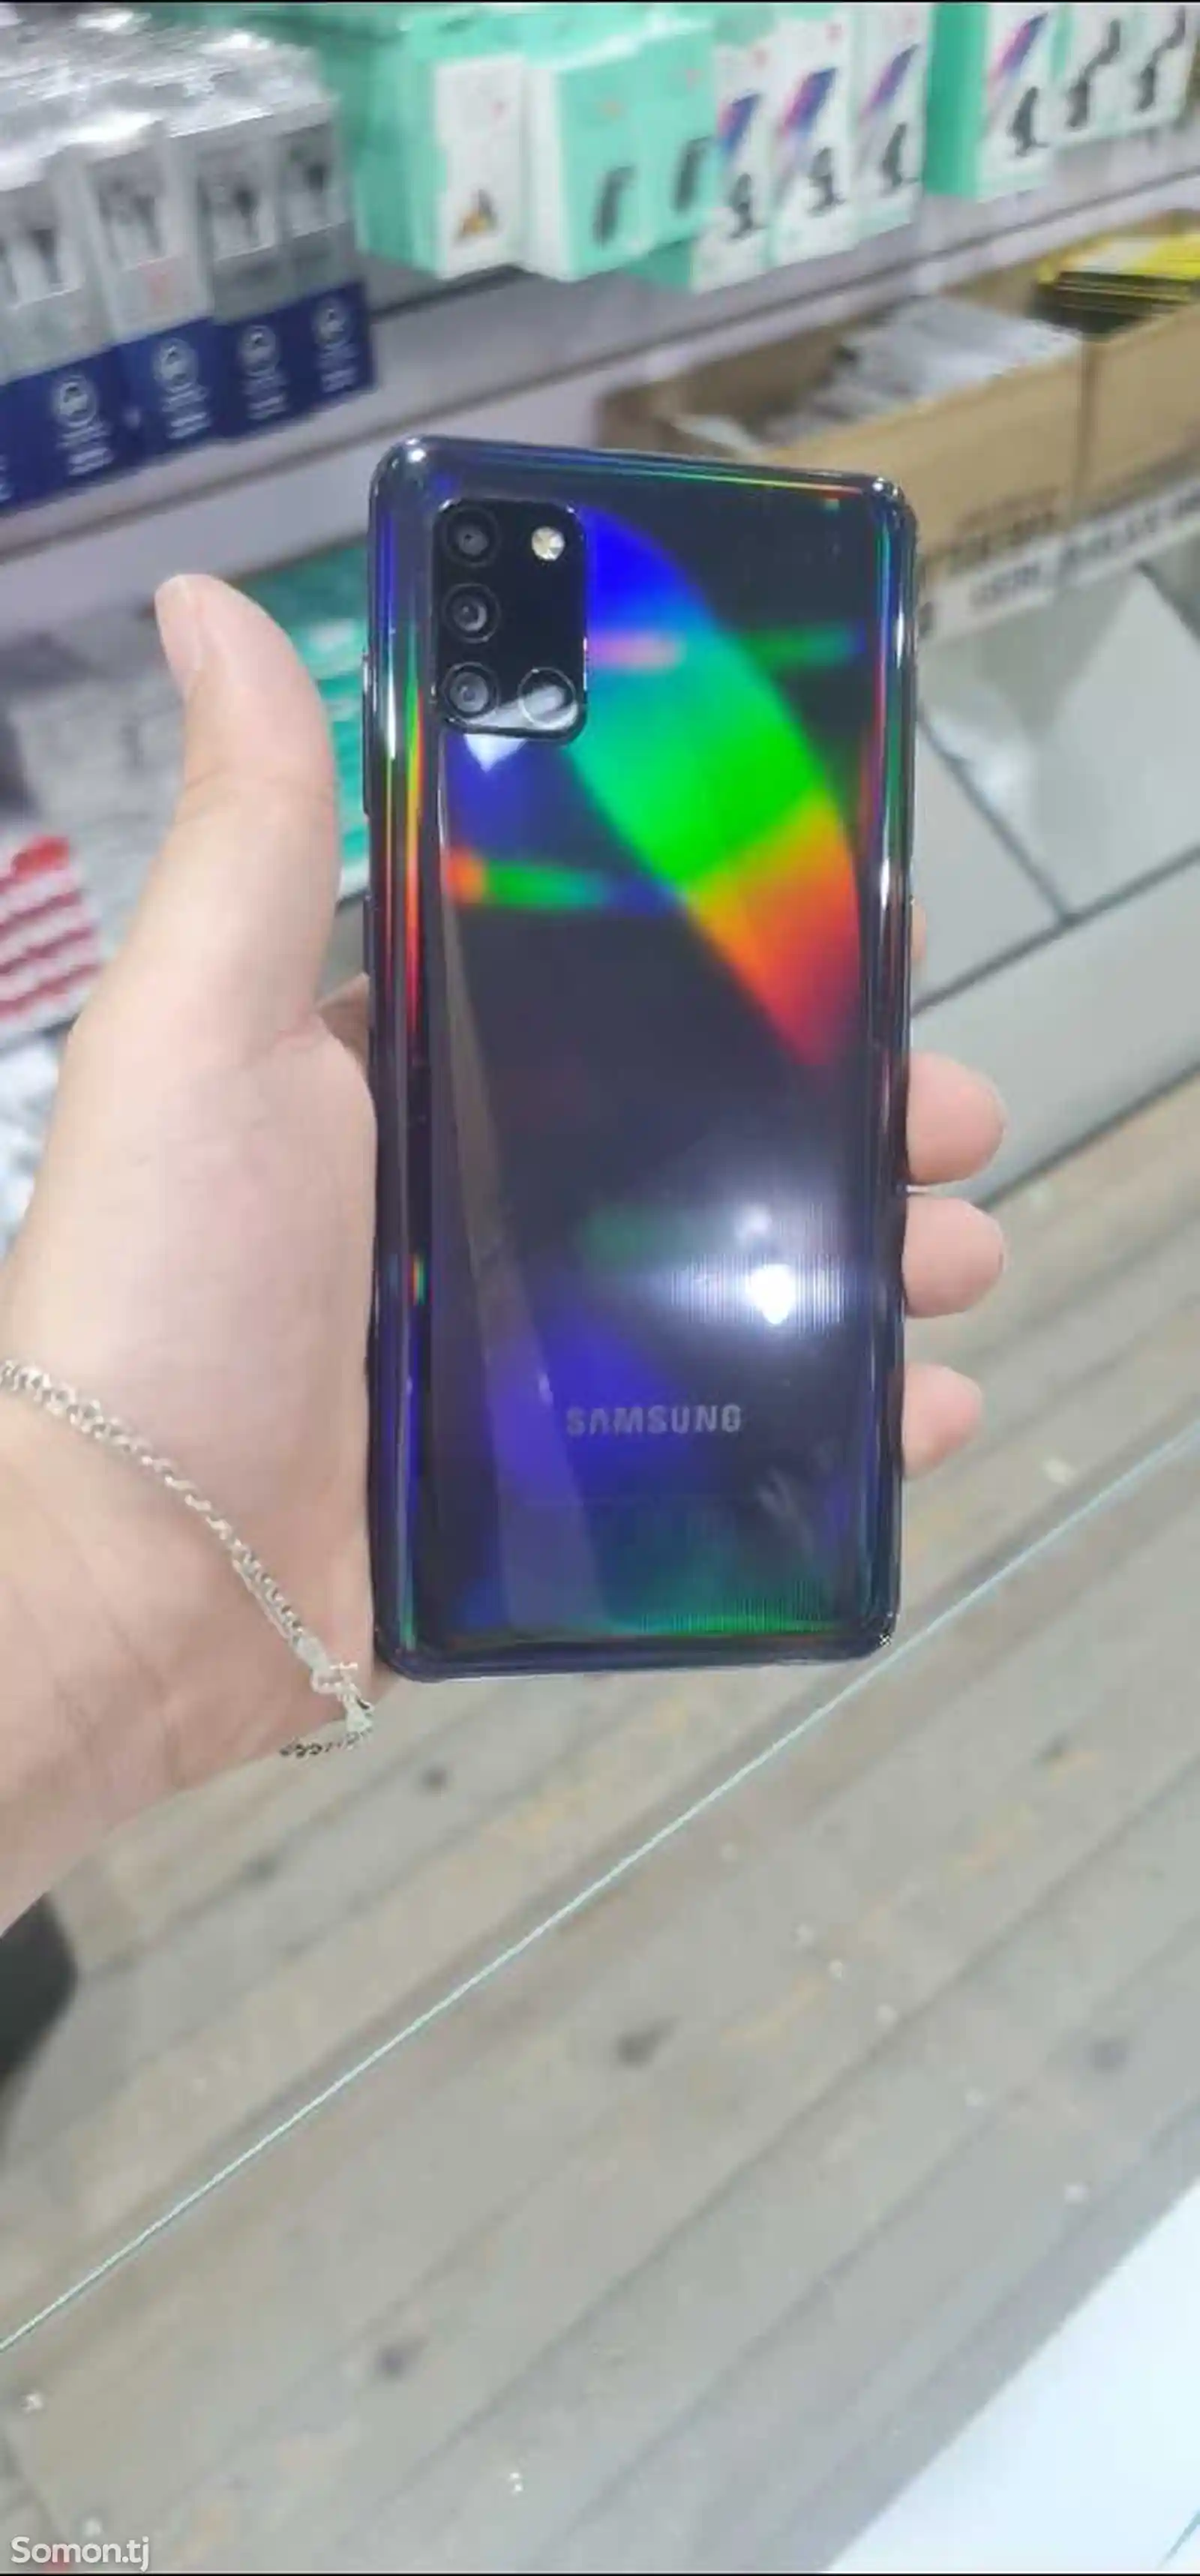 Samsung Galaxy A31 dubai duos-2